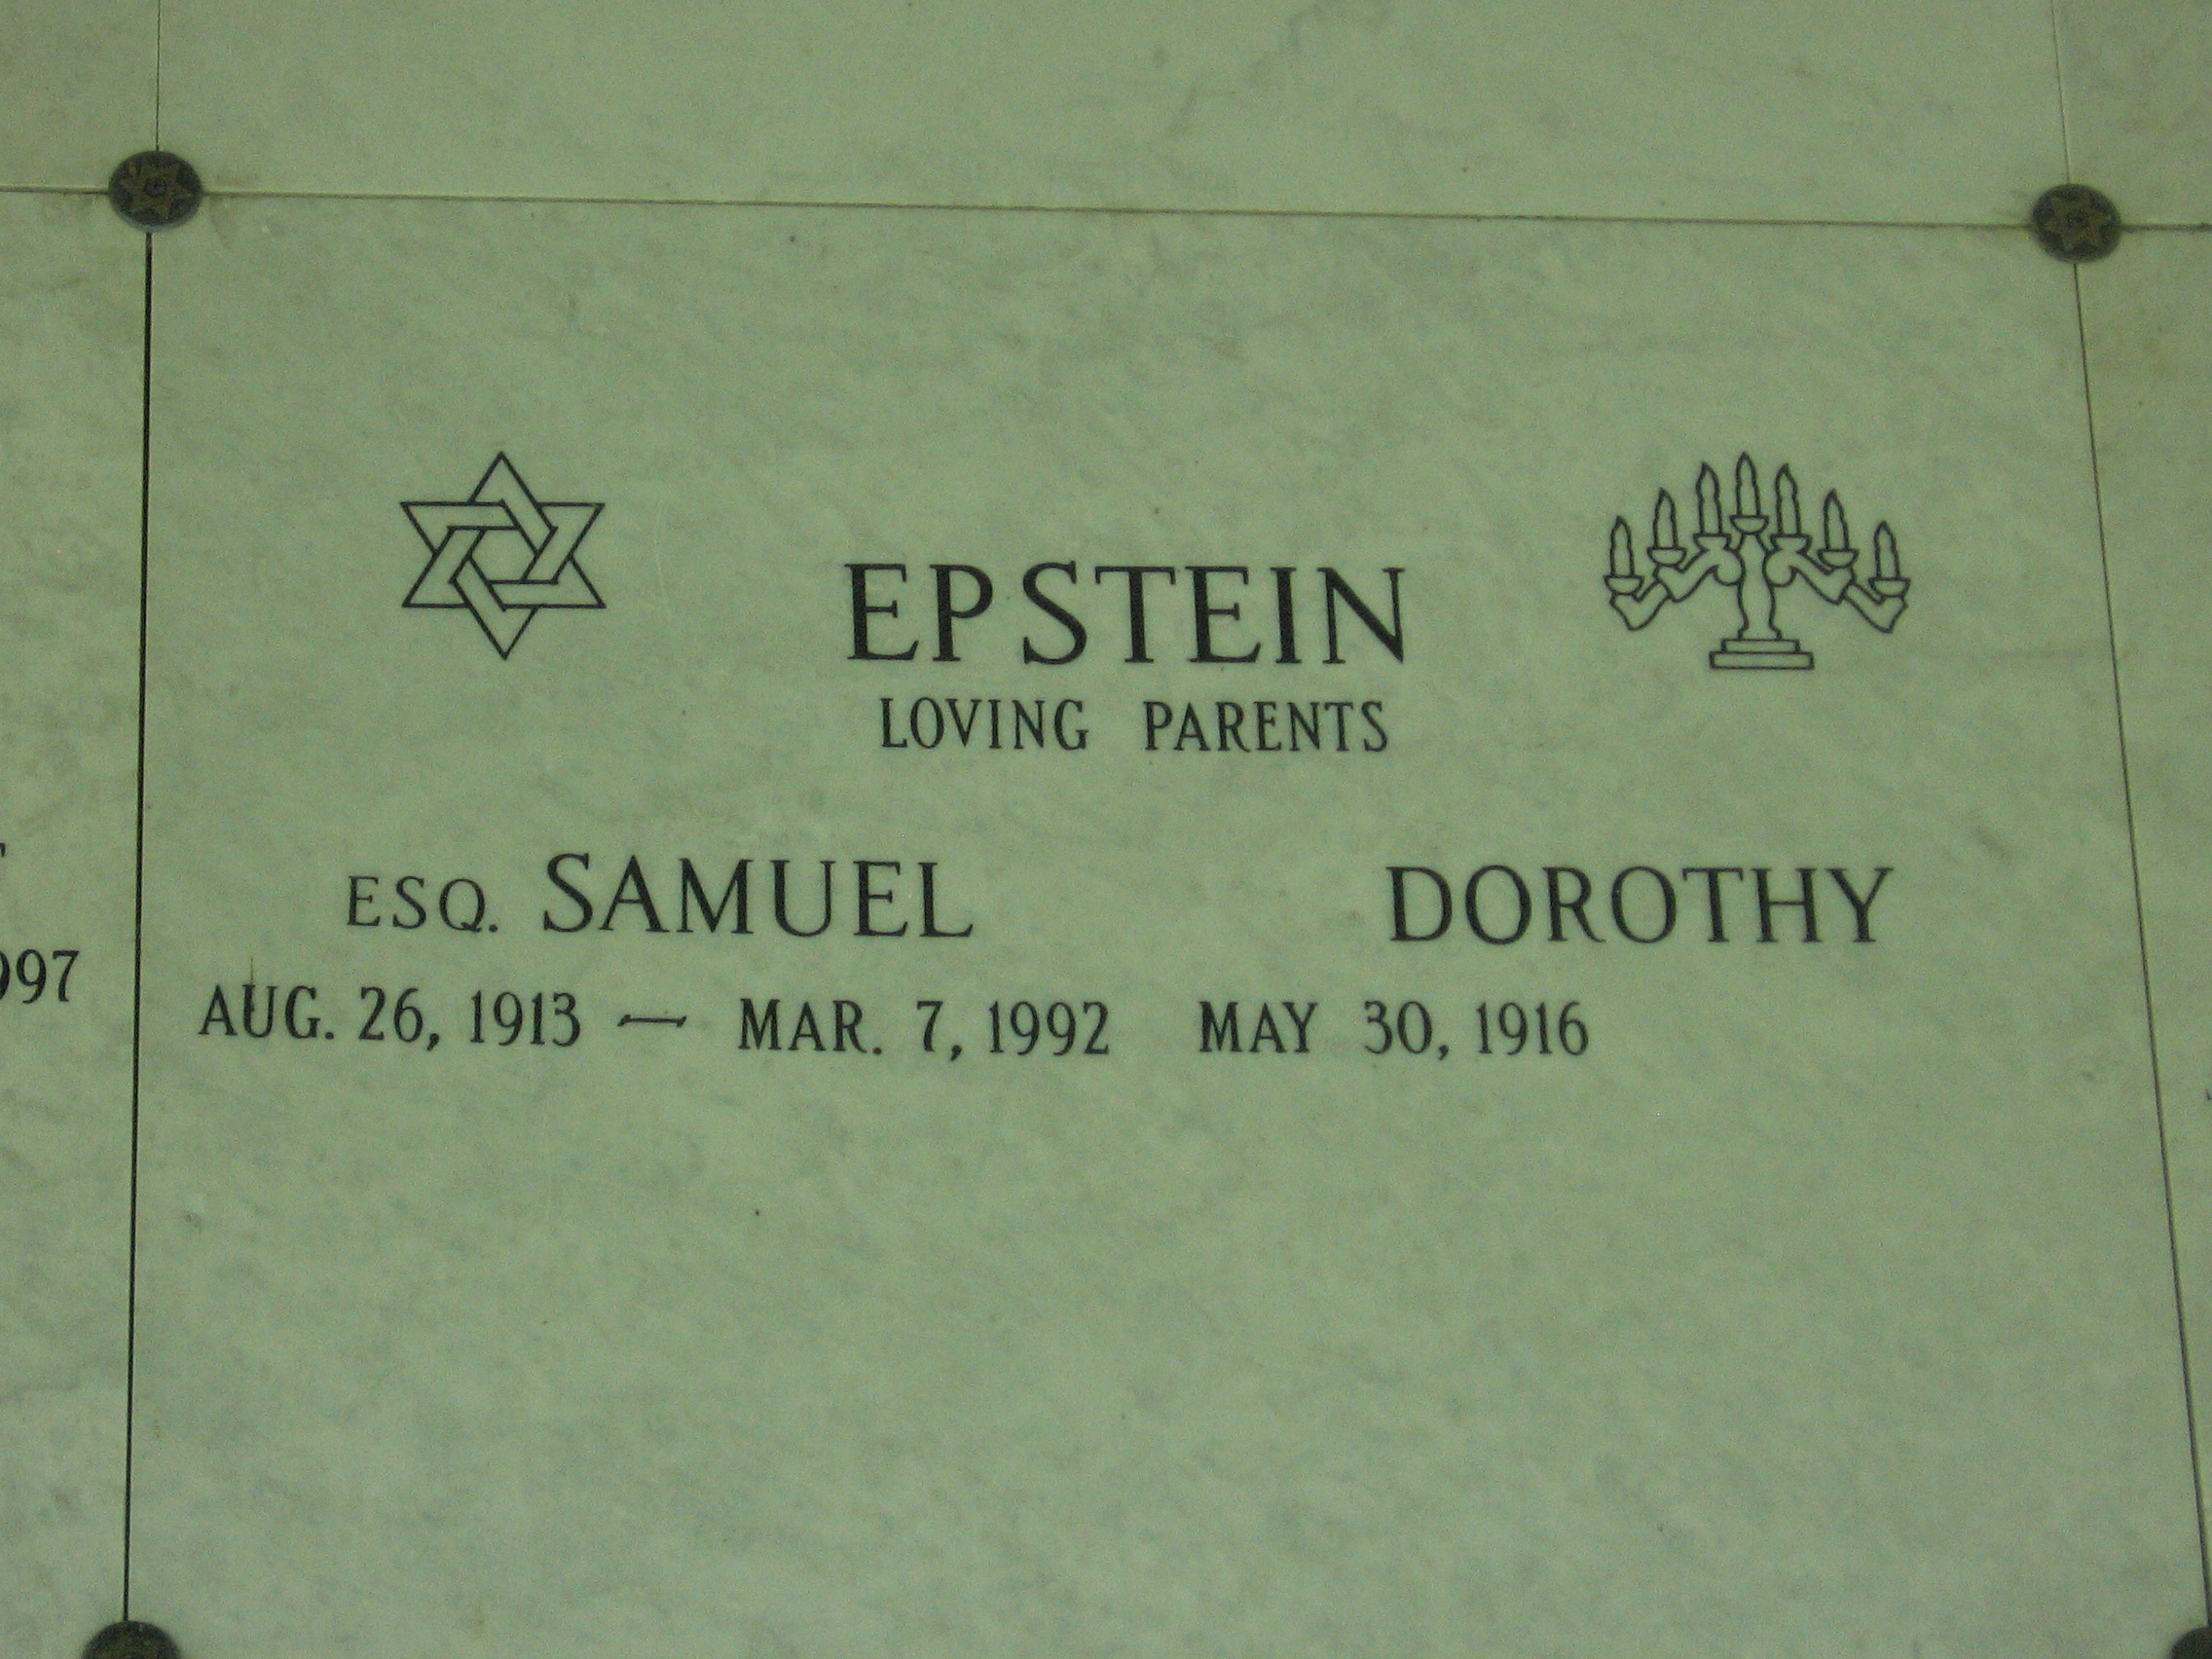 Dorothy Epstein